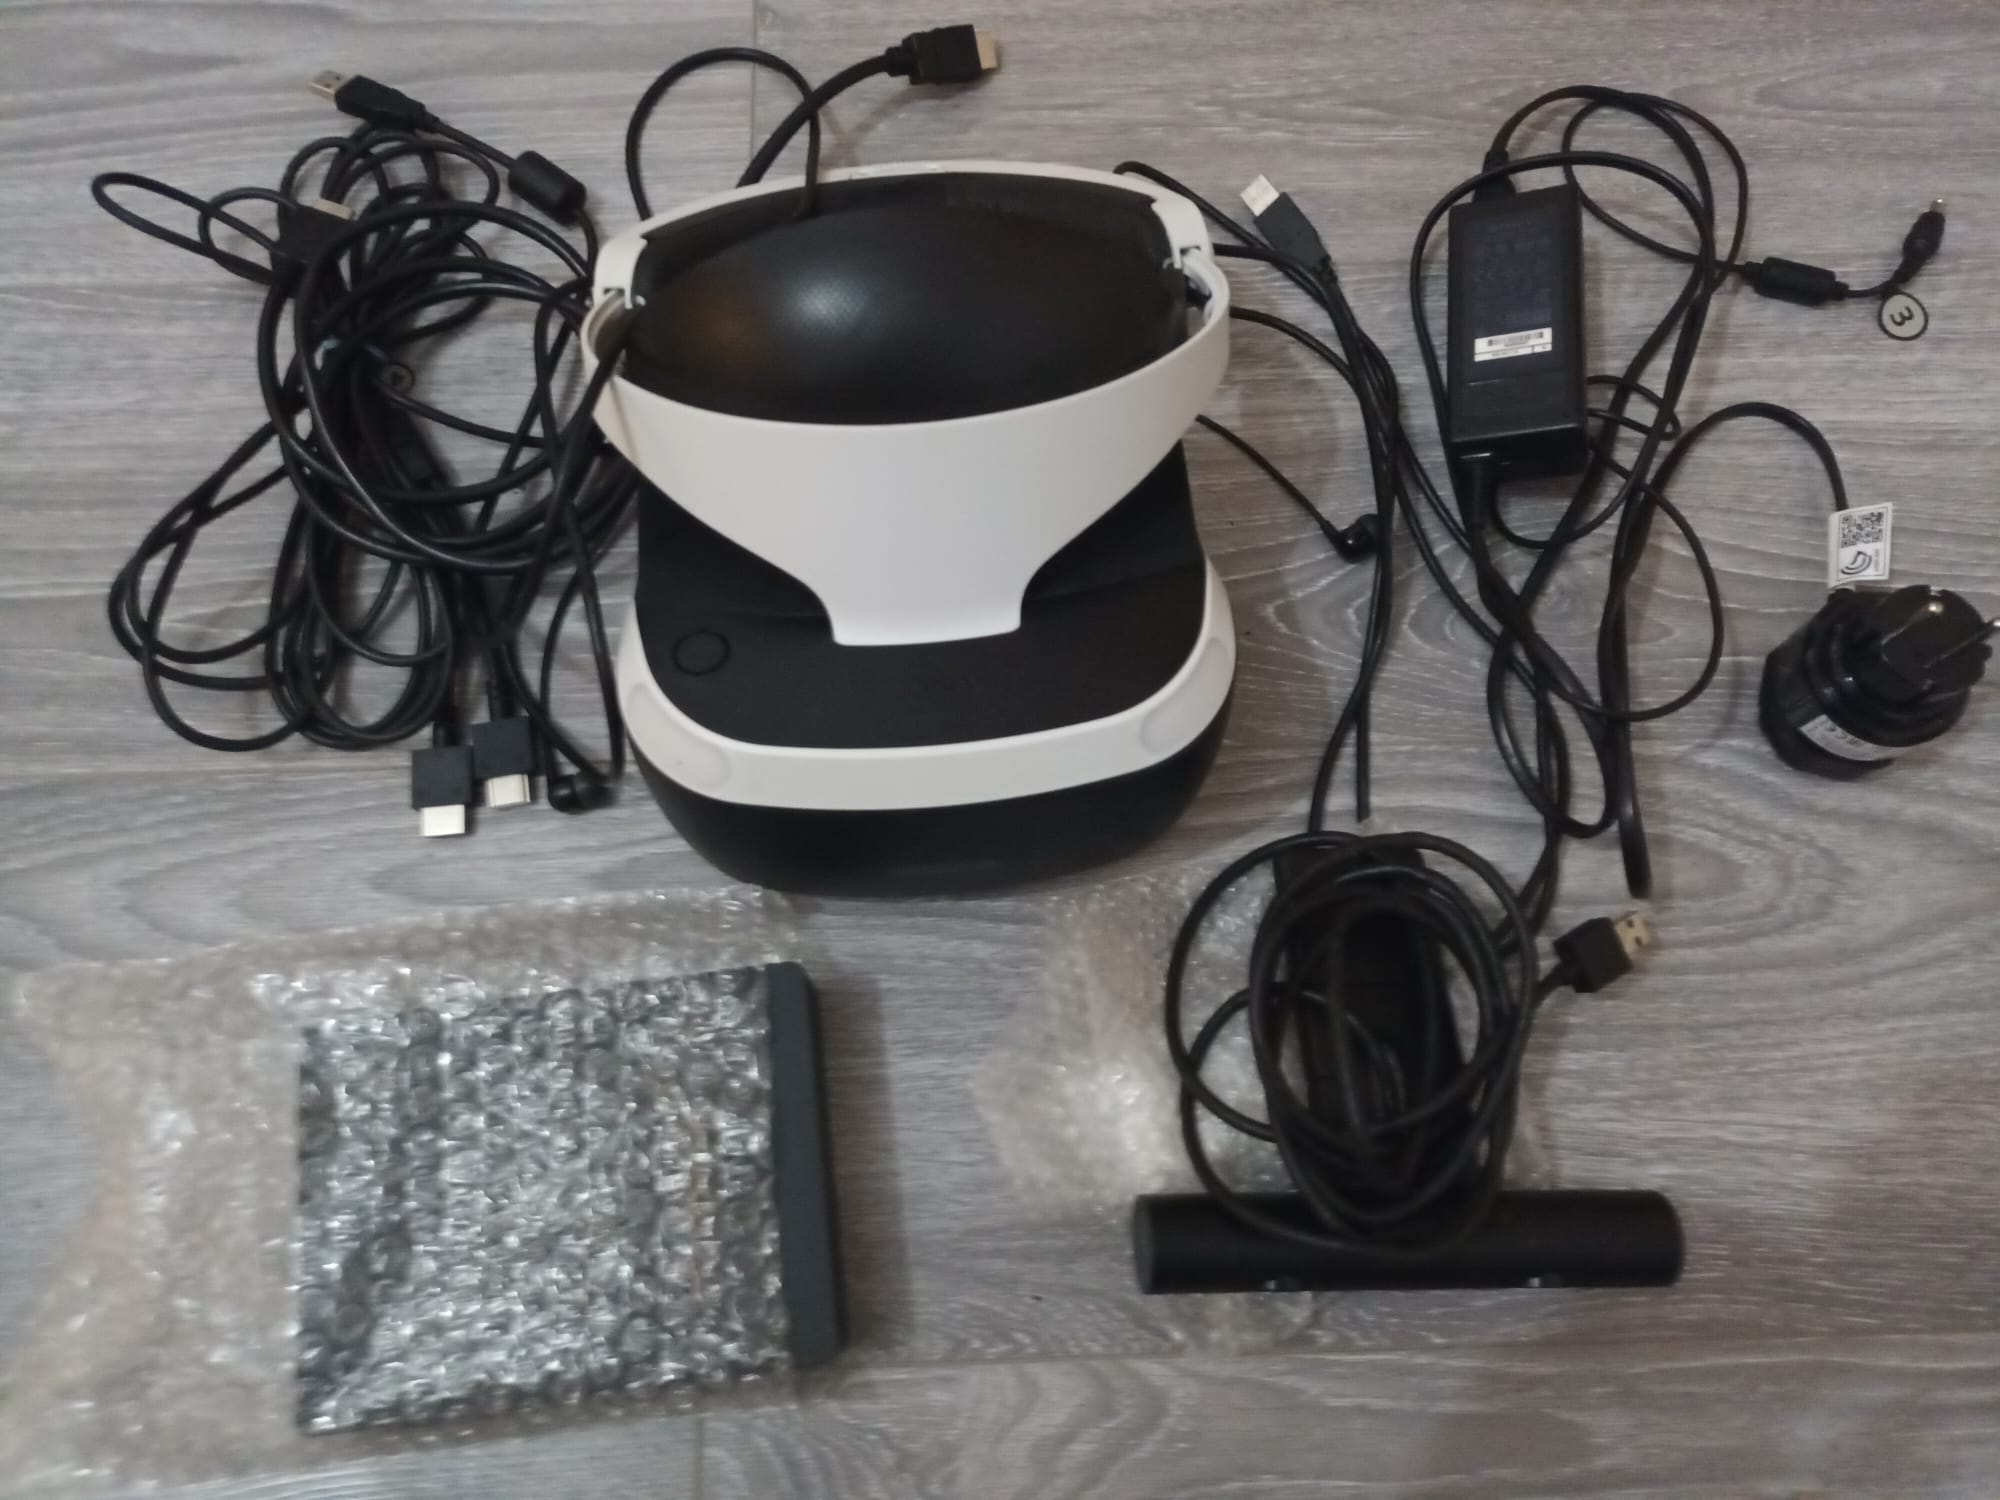 PSVR set - PlayStation VR + Camera